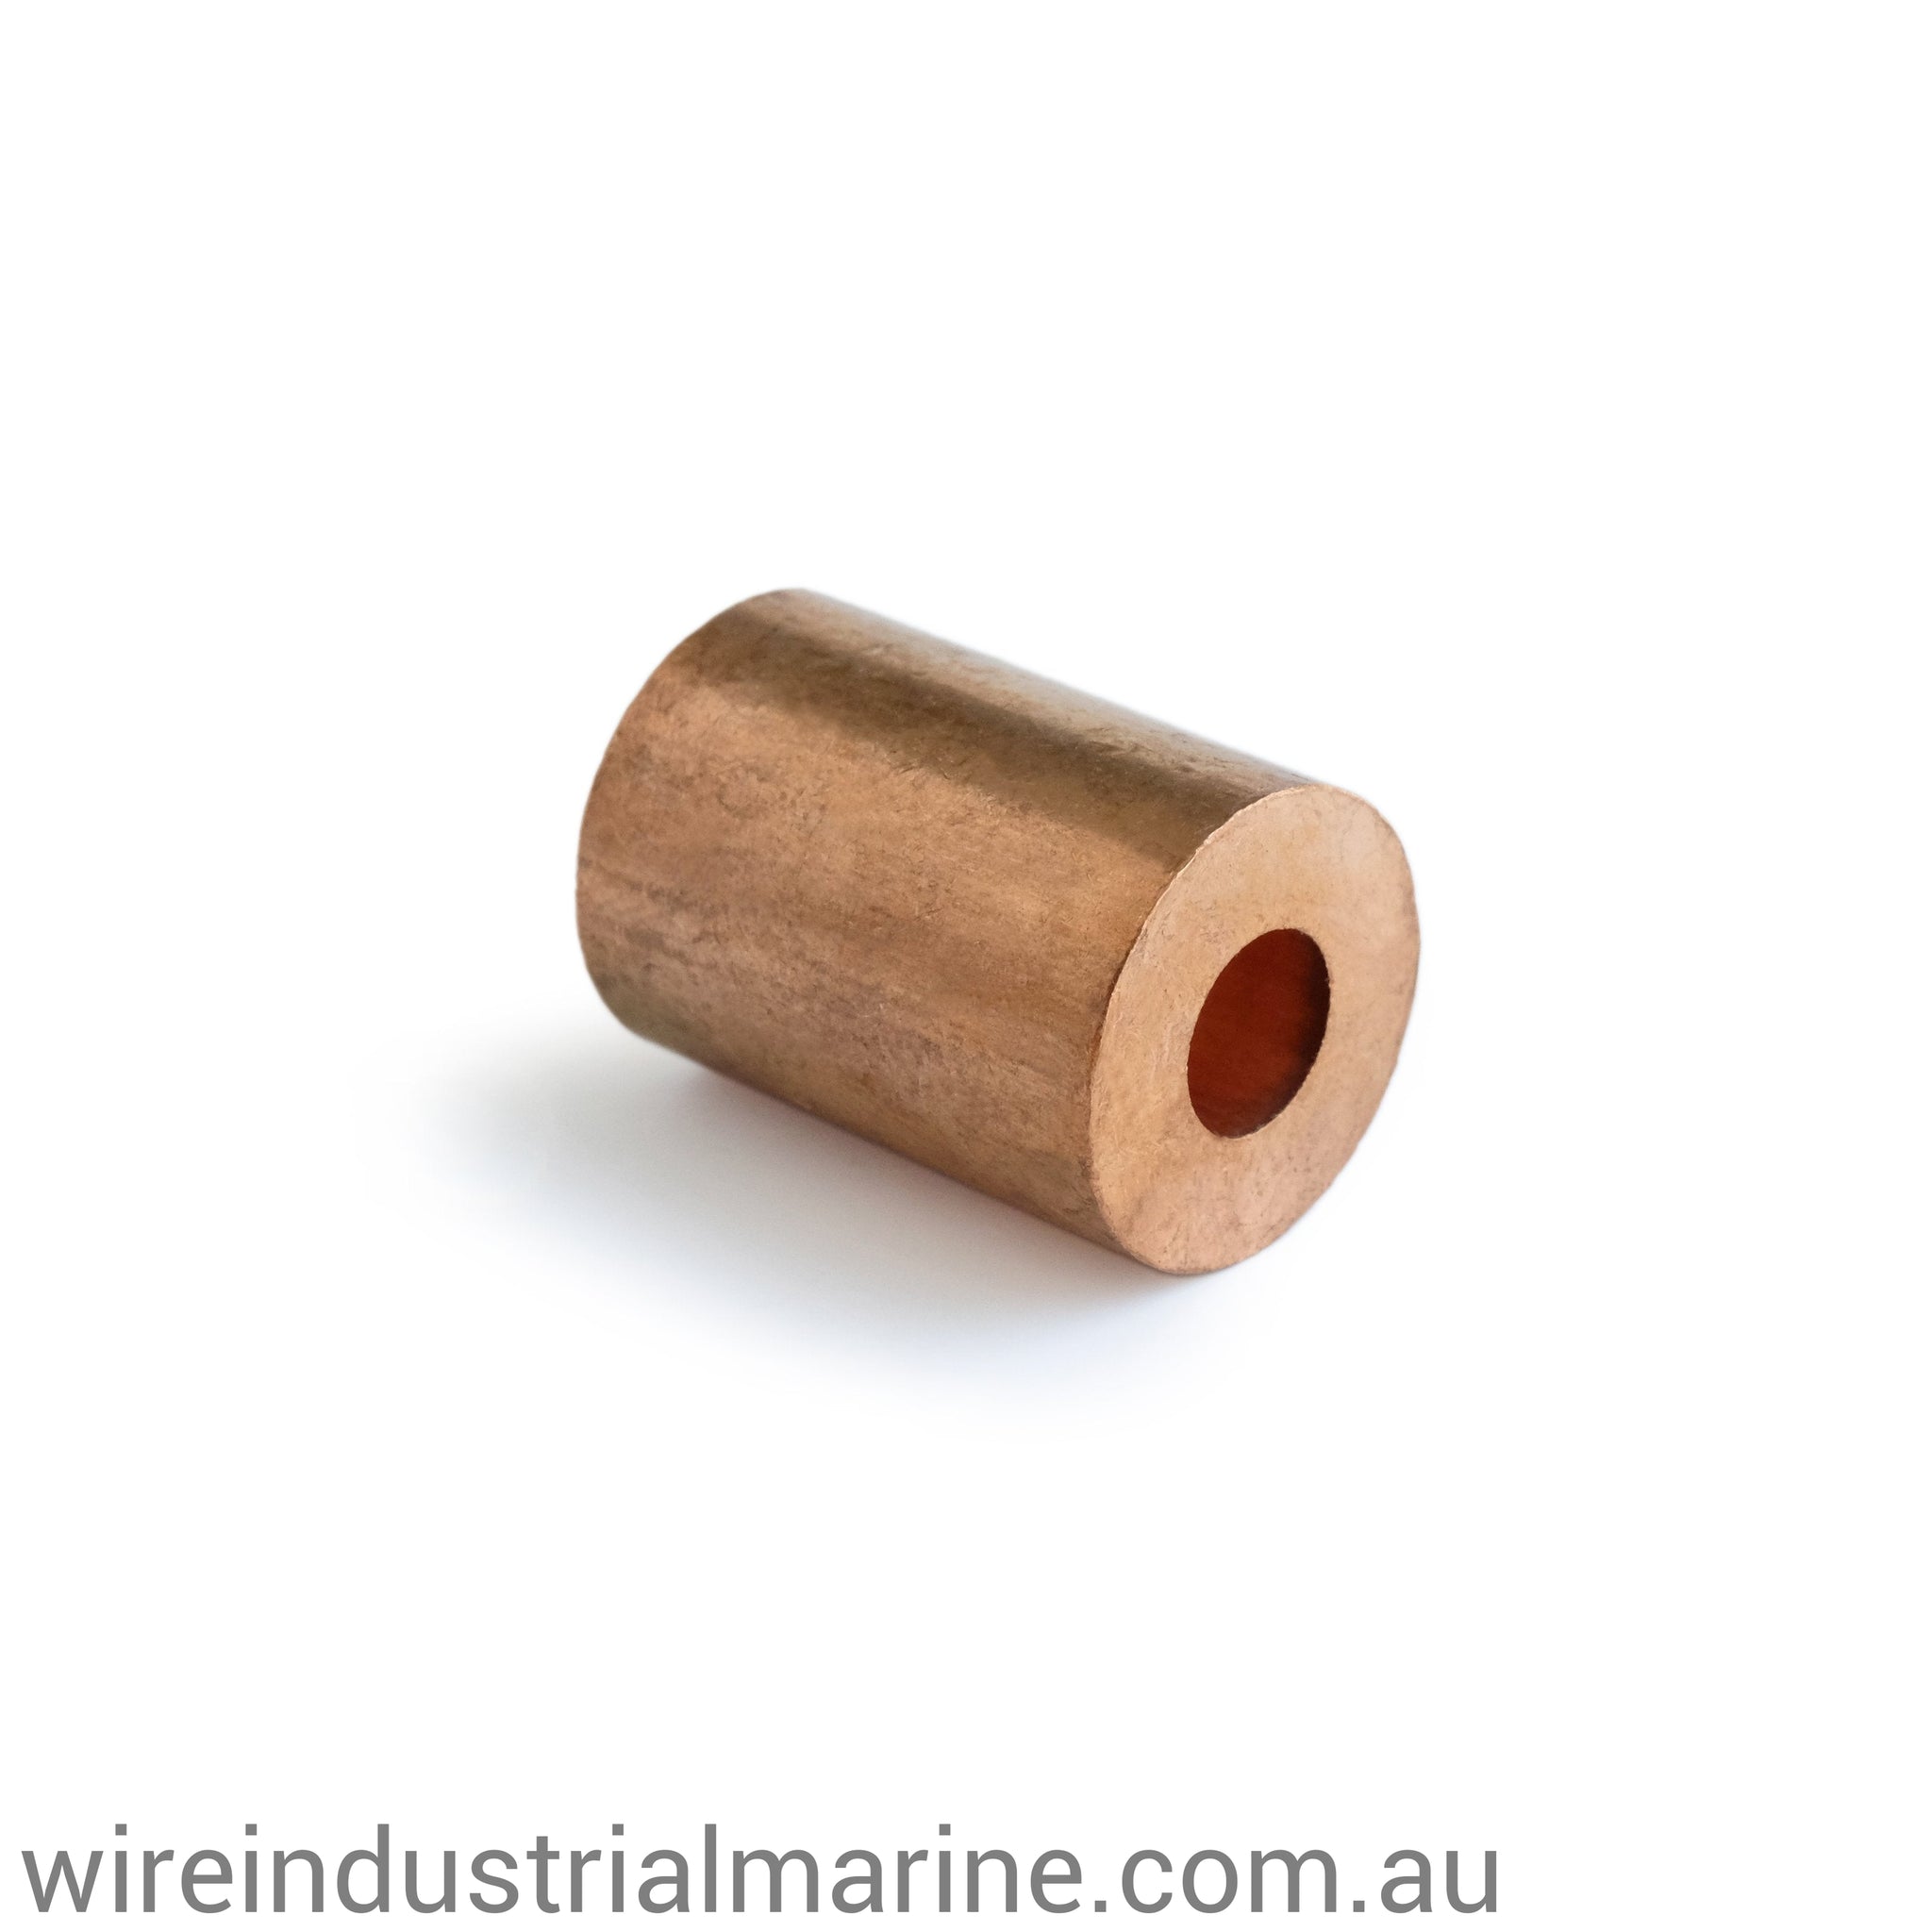 6mm-6.5mm COPPER ROUND-DIN Code machine press ferrule for stainless steel wire-wireindustrialmarine